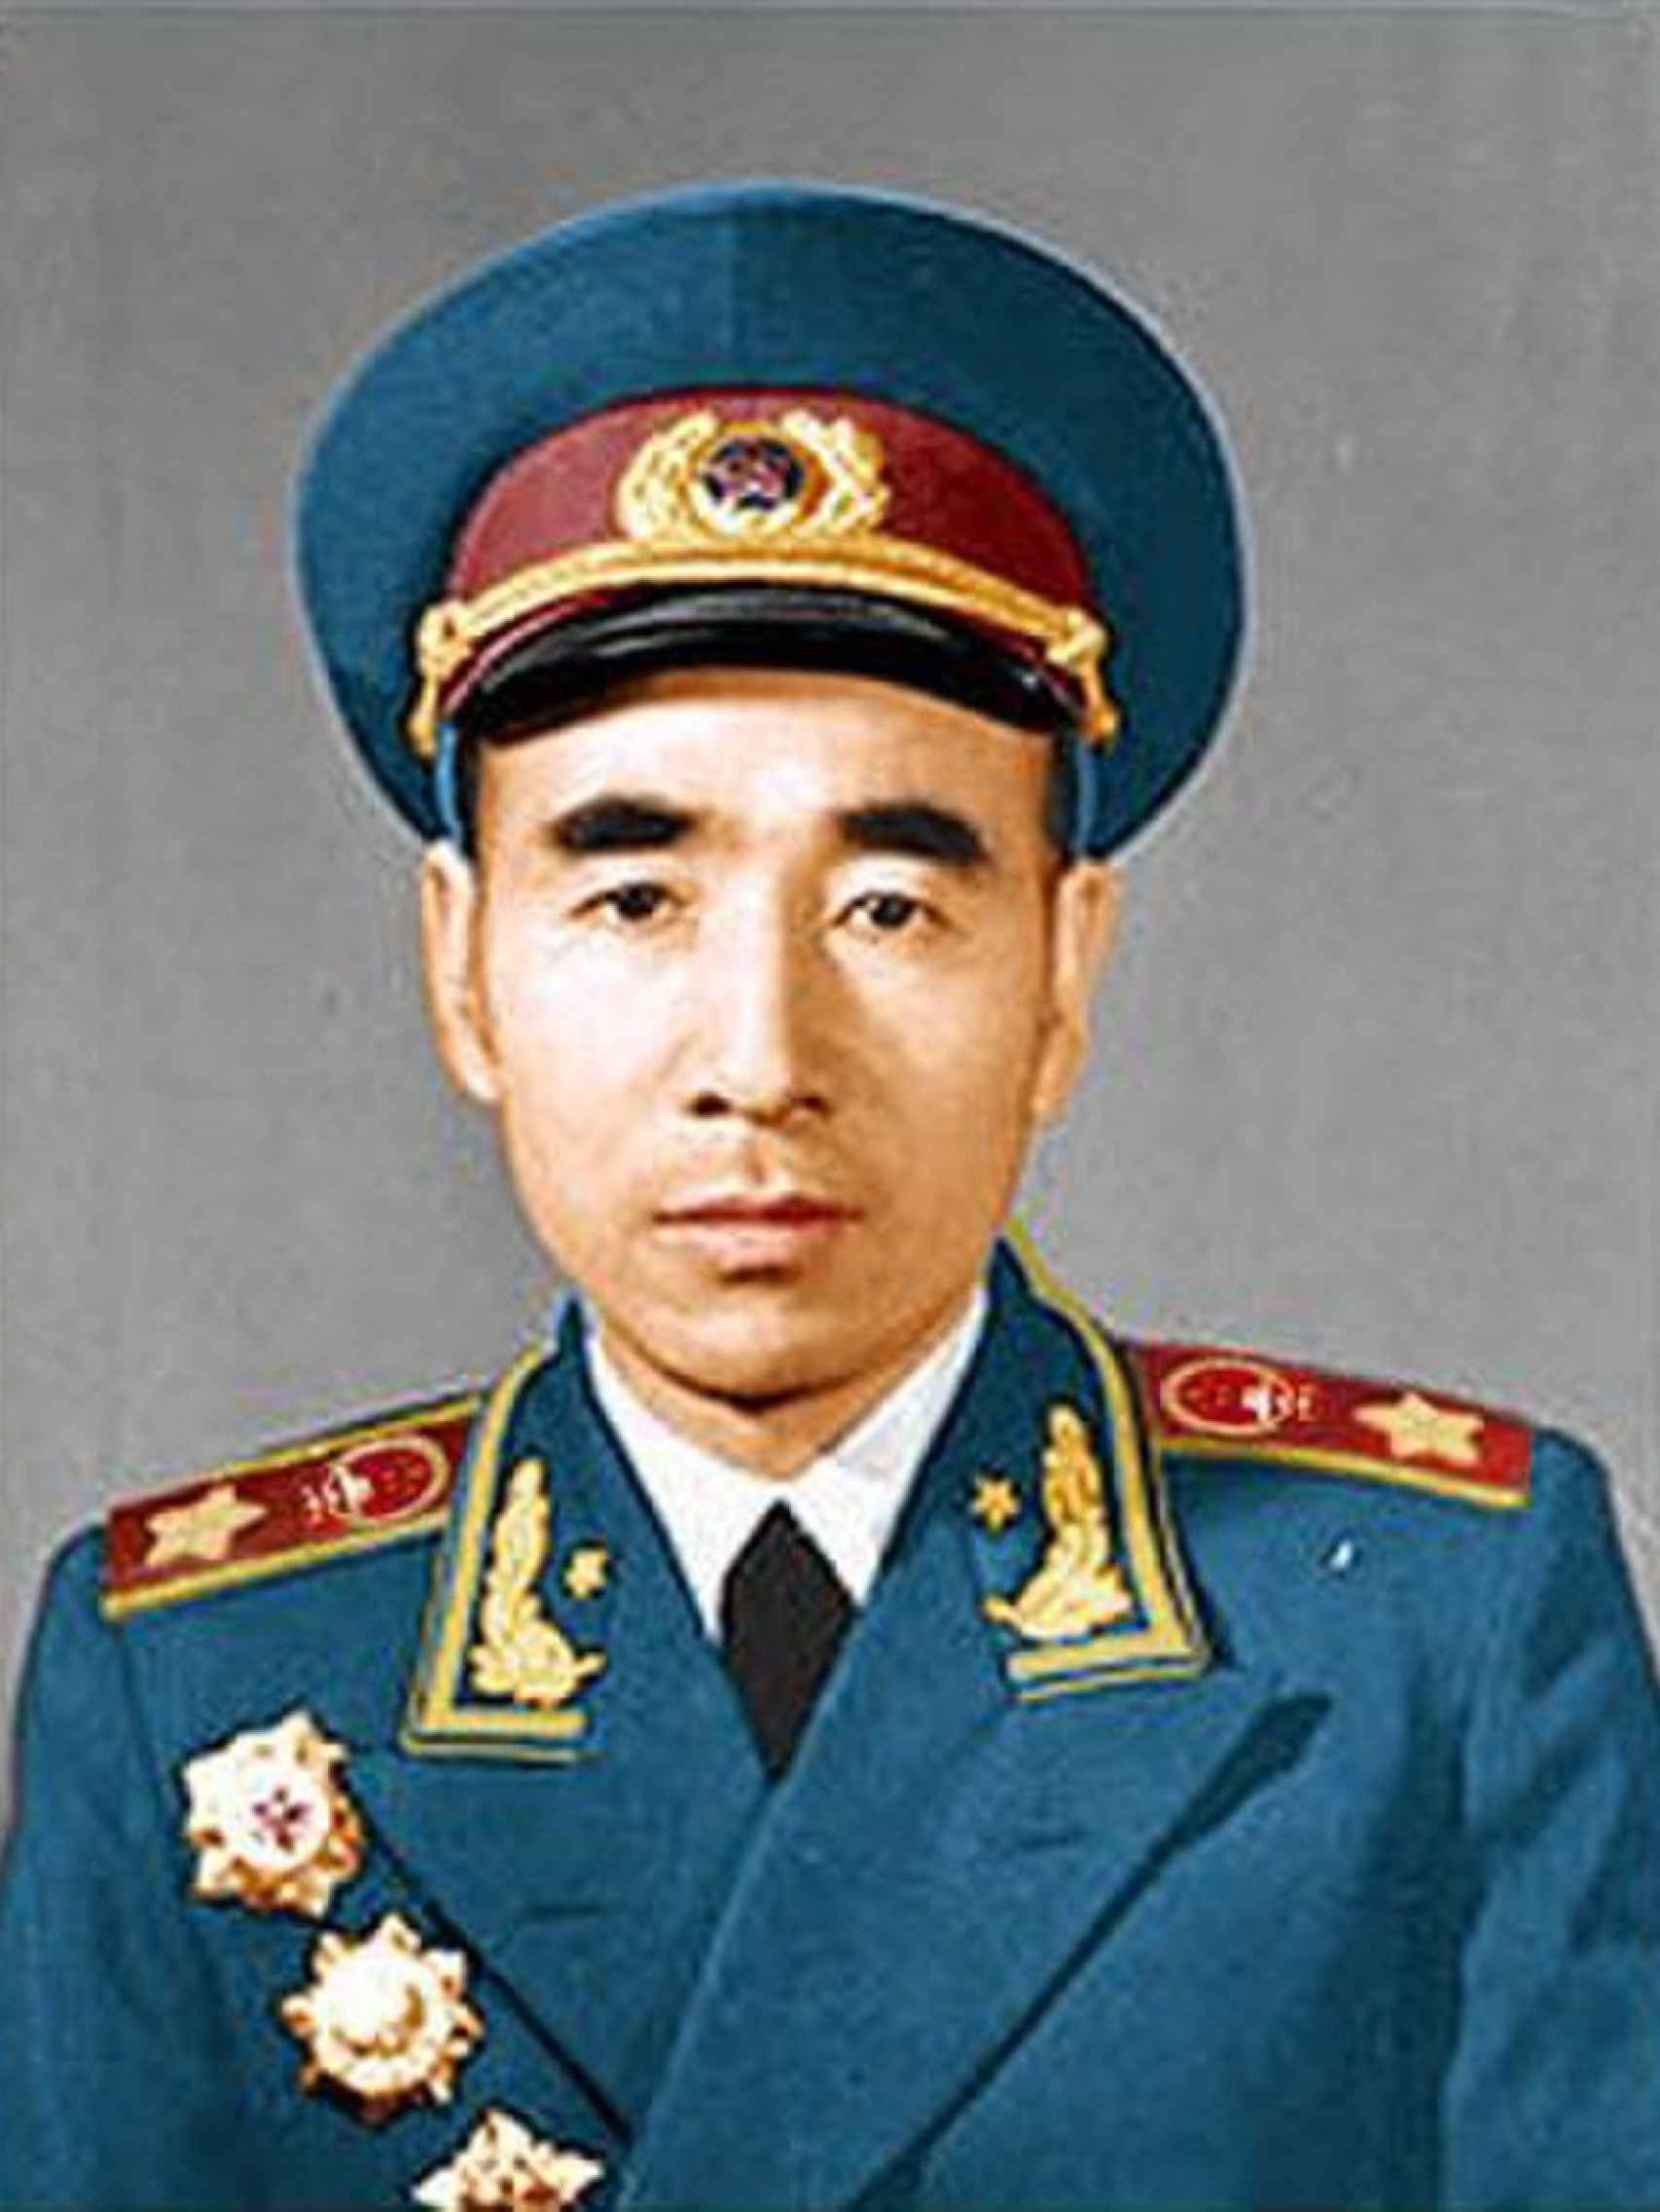 Retrato oficial del Mariscal Lin Biao en 1955.